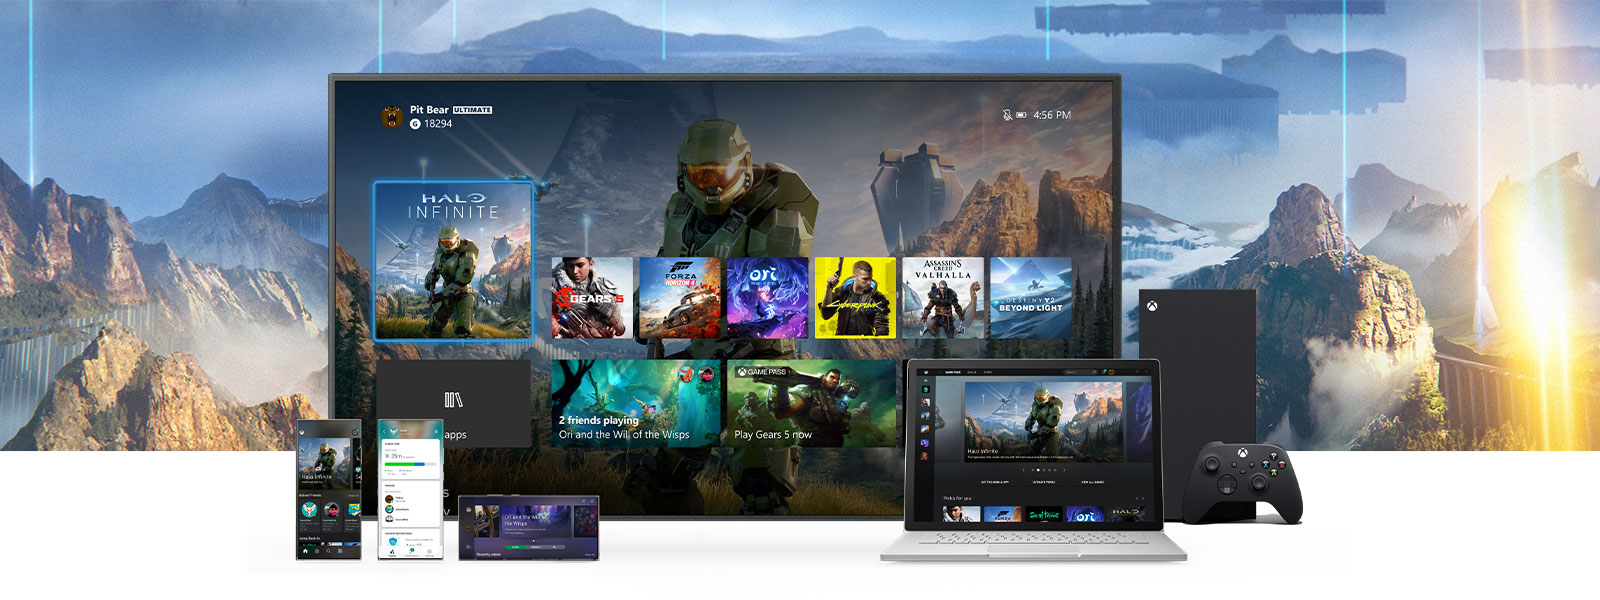 Xbox ダッシュボードが、Xbox Series X の横にあるテレビに表示されている。PC やモバイル デバイスなどのその他のデバイスが、TV の正面に置かれている。